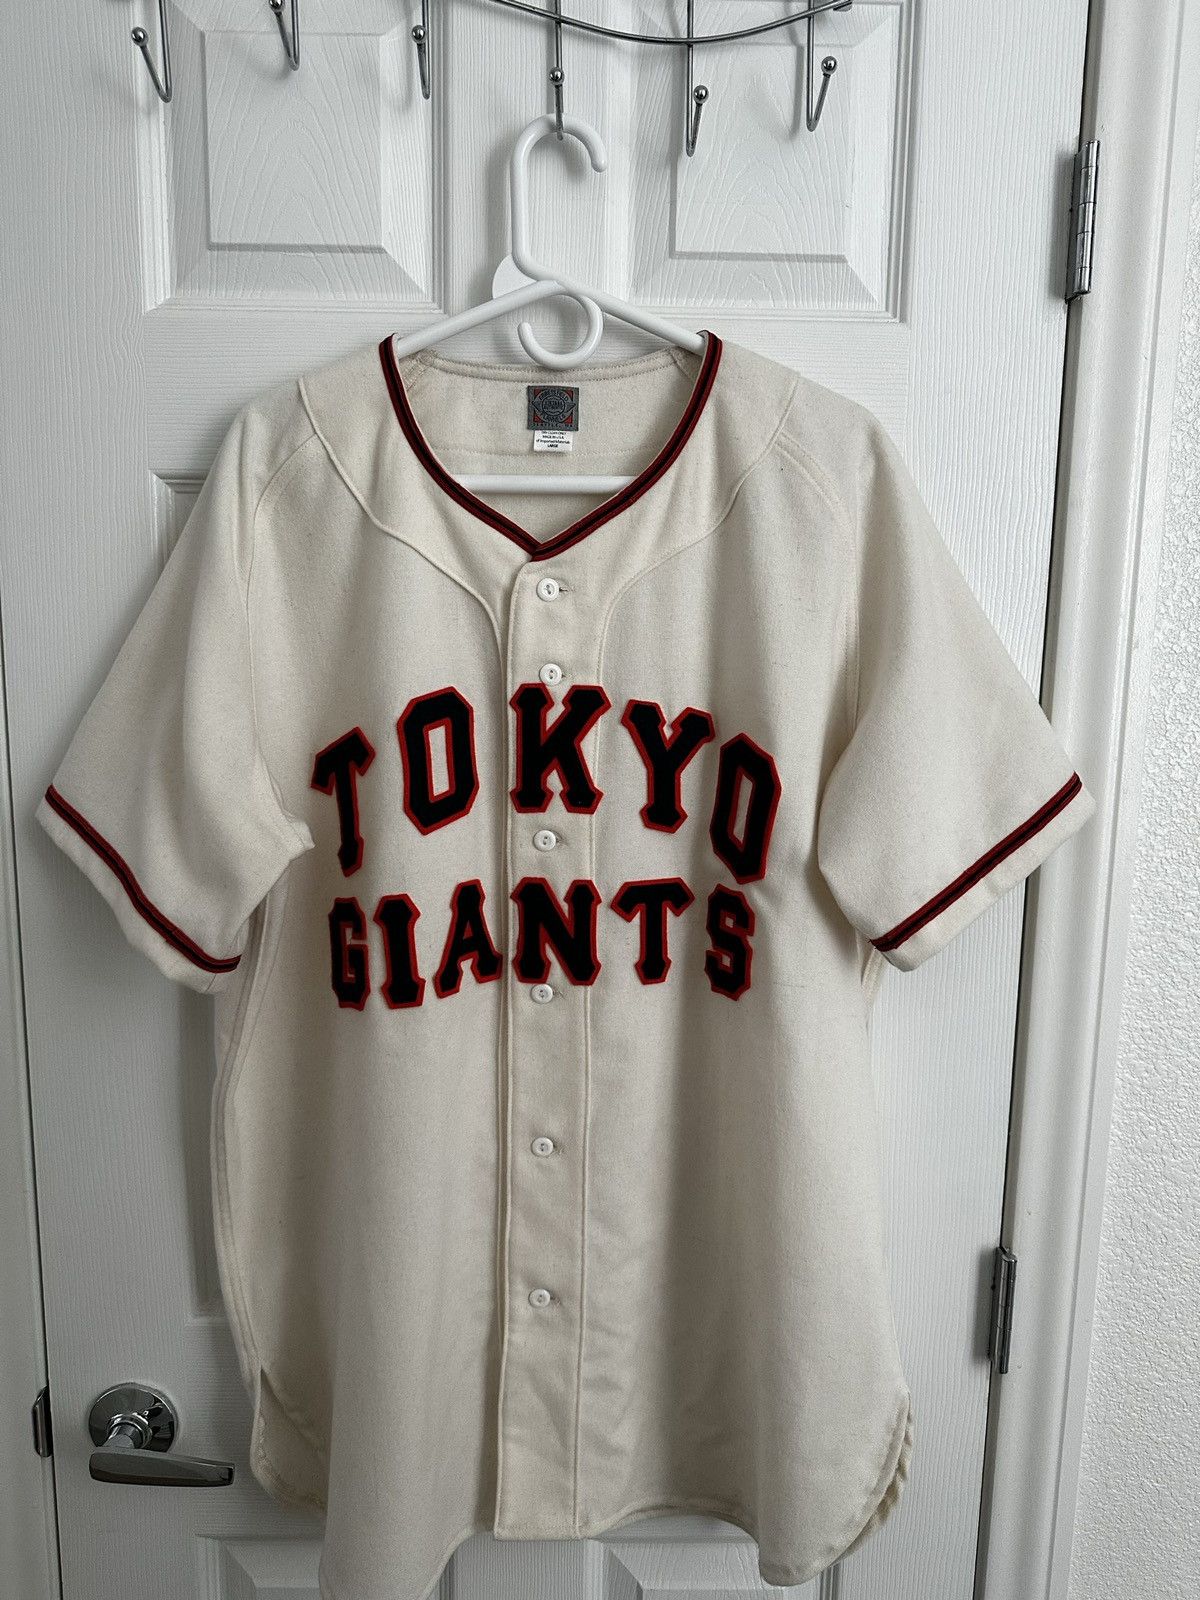 Ebbets Field Flannels Tokyo Kyojin (Giants) 1953 Home Jersey